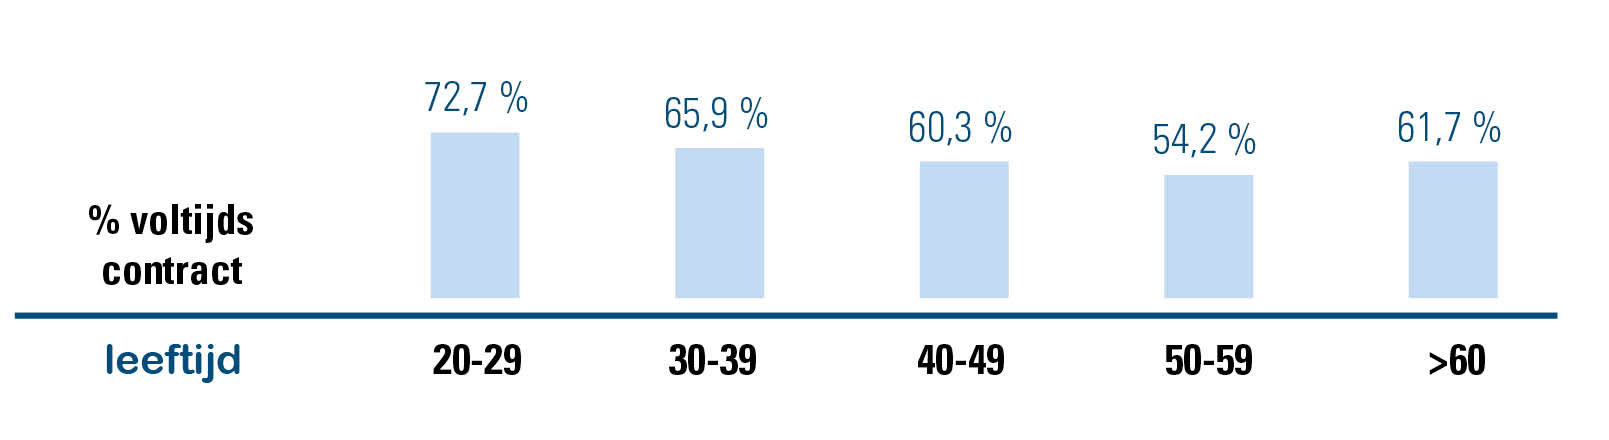 percentage voltijdse arbeidscontracten in functie van de leeftijd van de werknemer_acerta